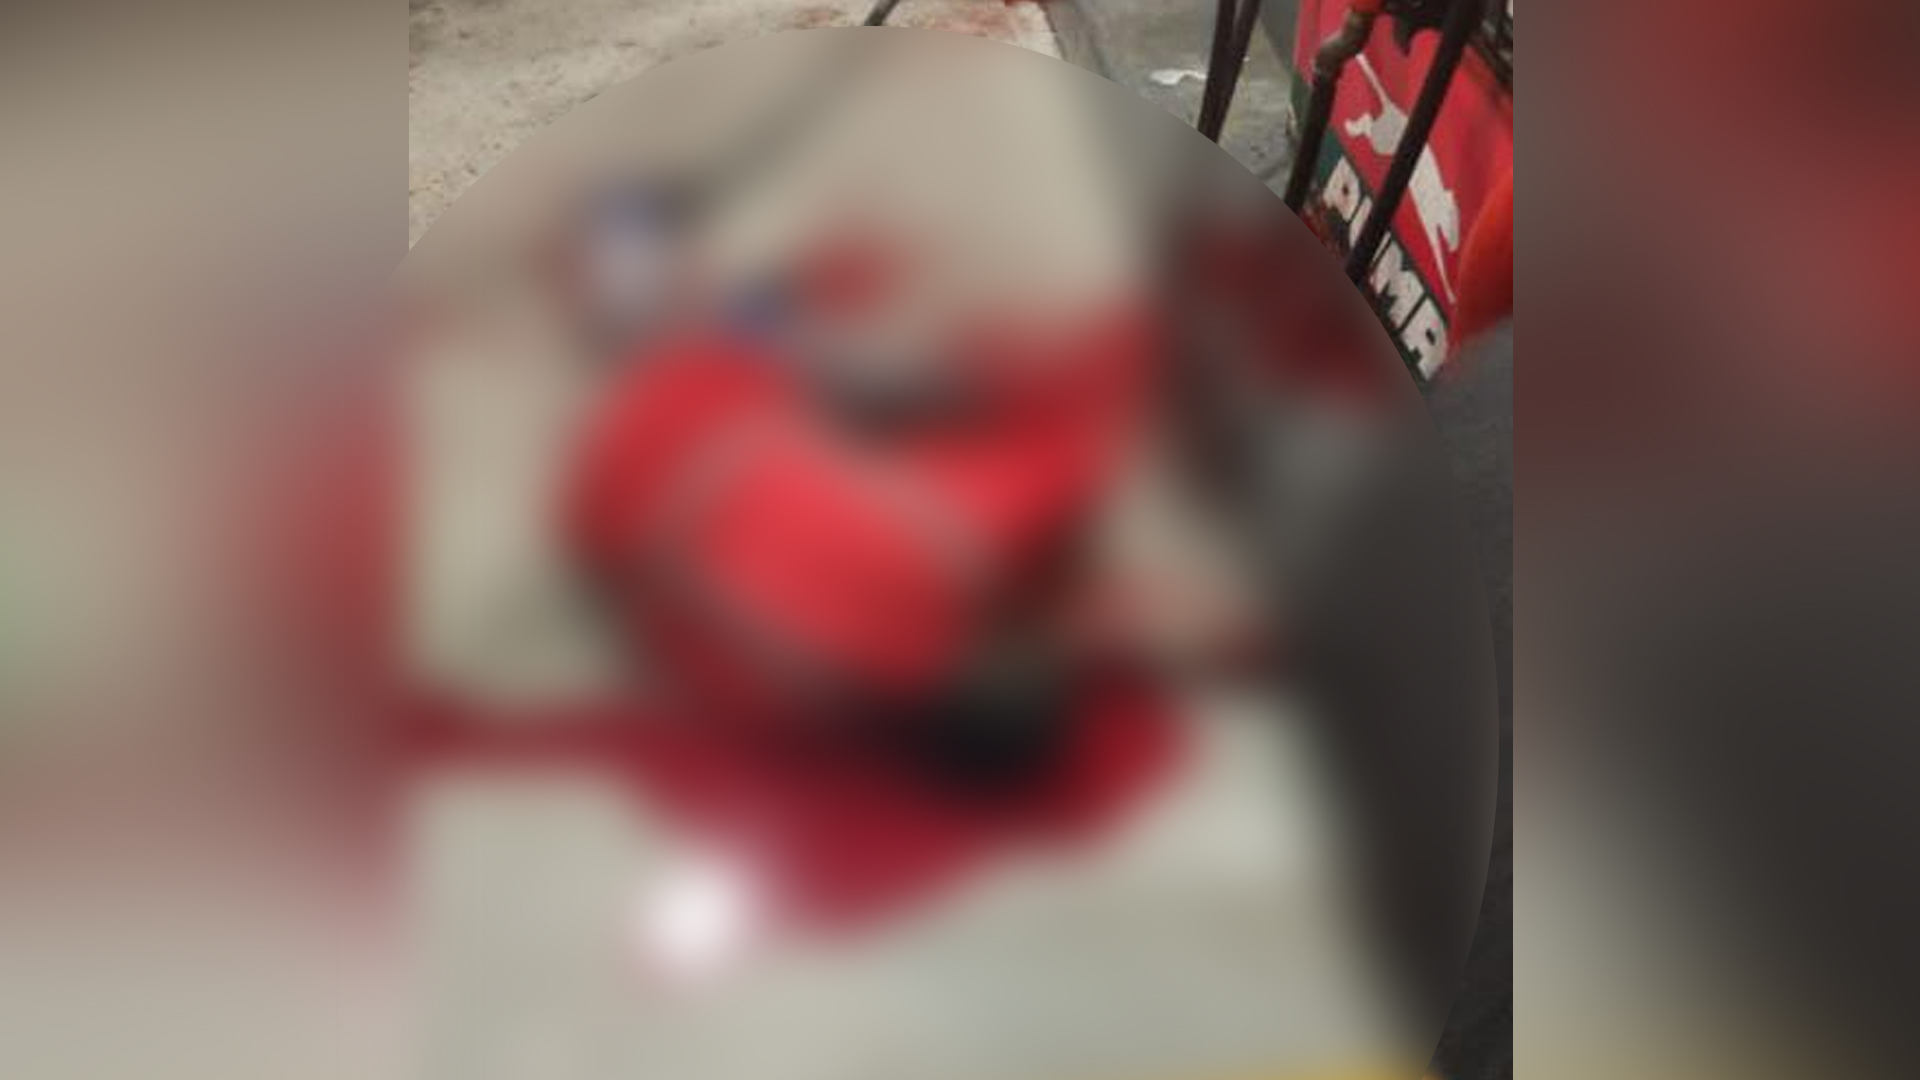 Tras el ataque a bala, el trabajador de la estación de servicio quedó tendido sin vida en el suelo